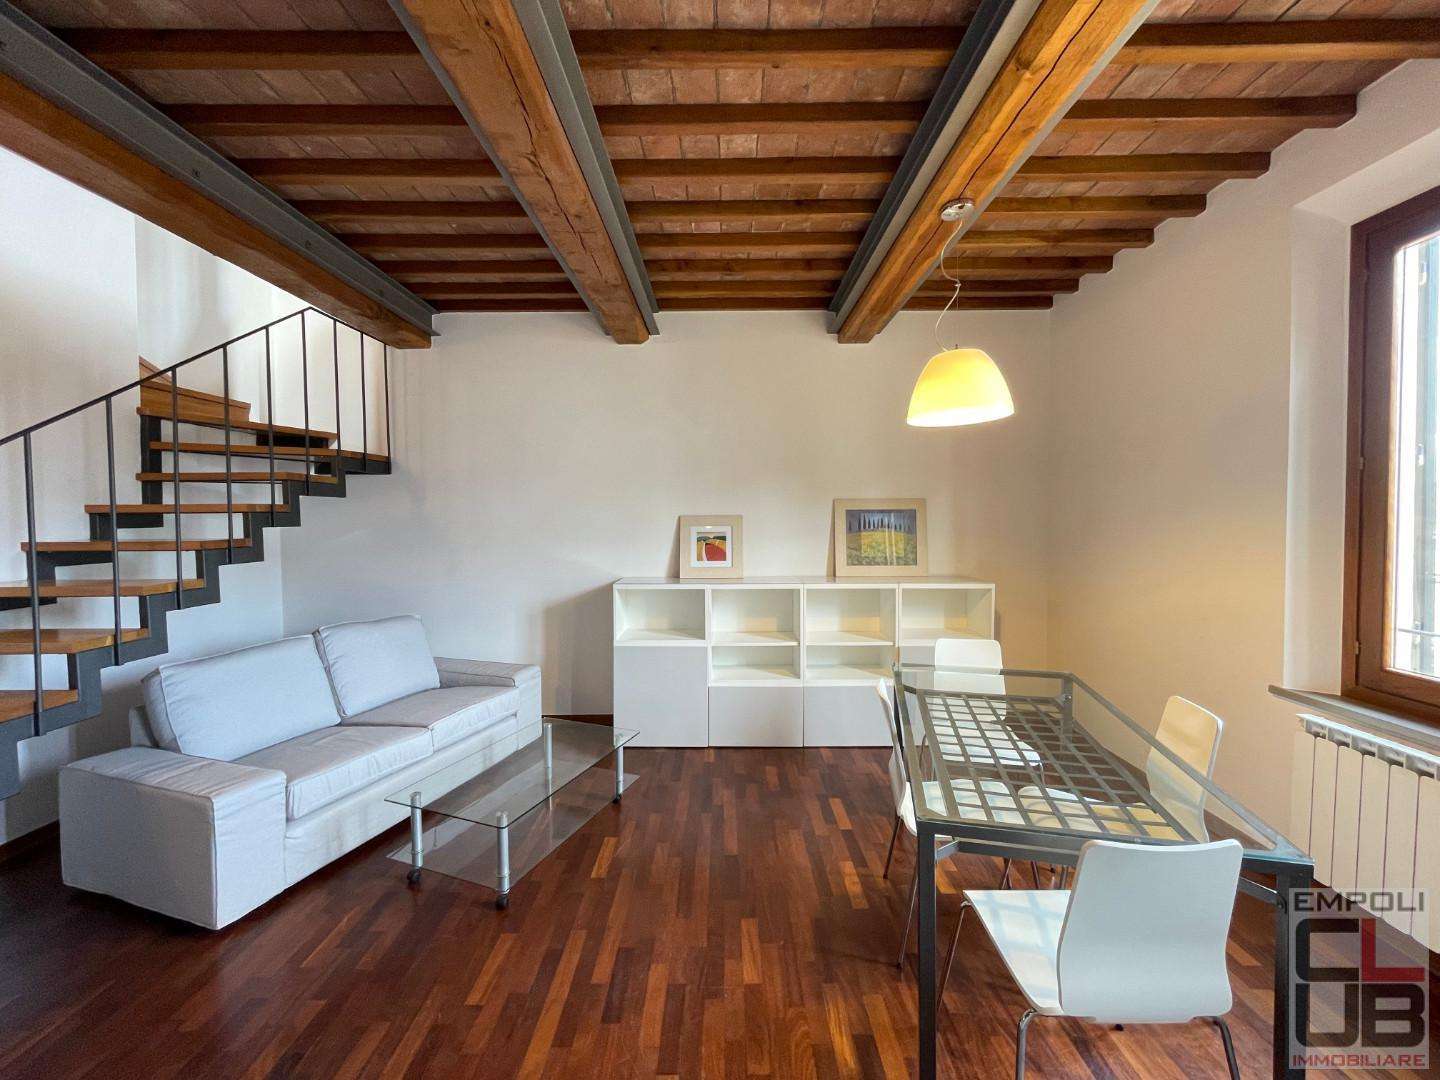 Casa Bi - Trifamiliare in Vendita a Empoli Via Roma, 50053